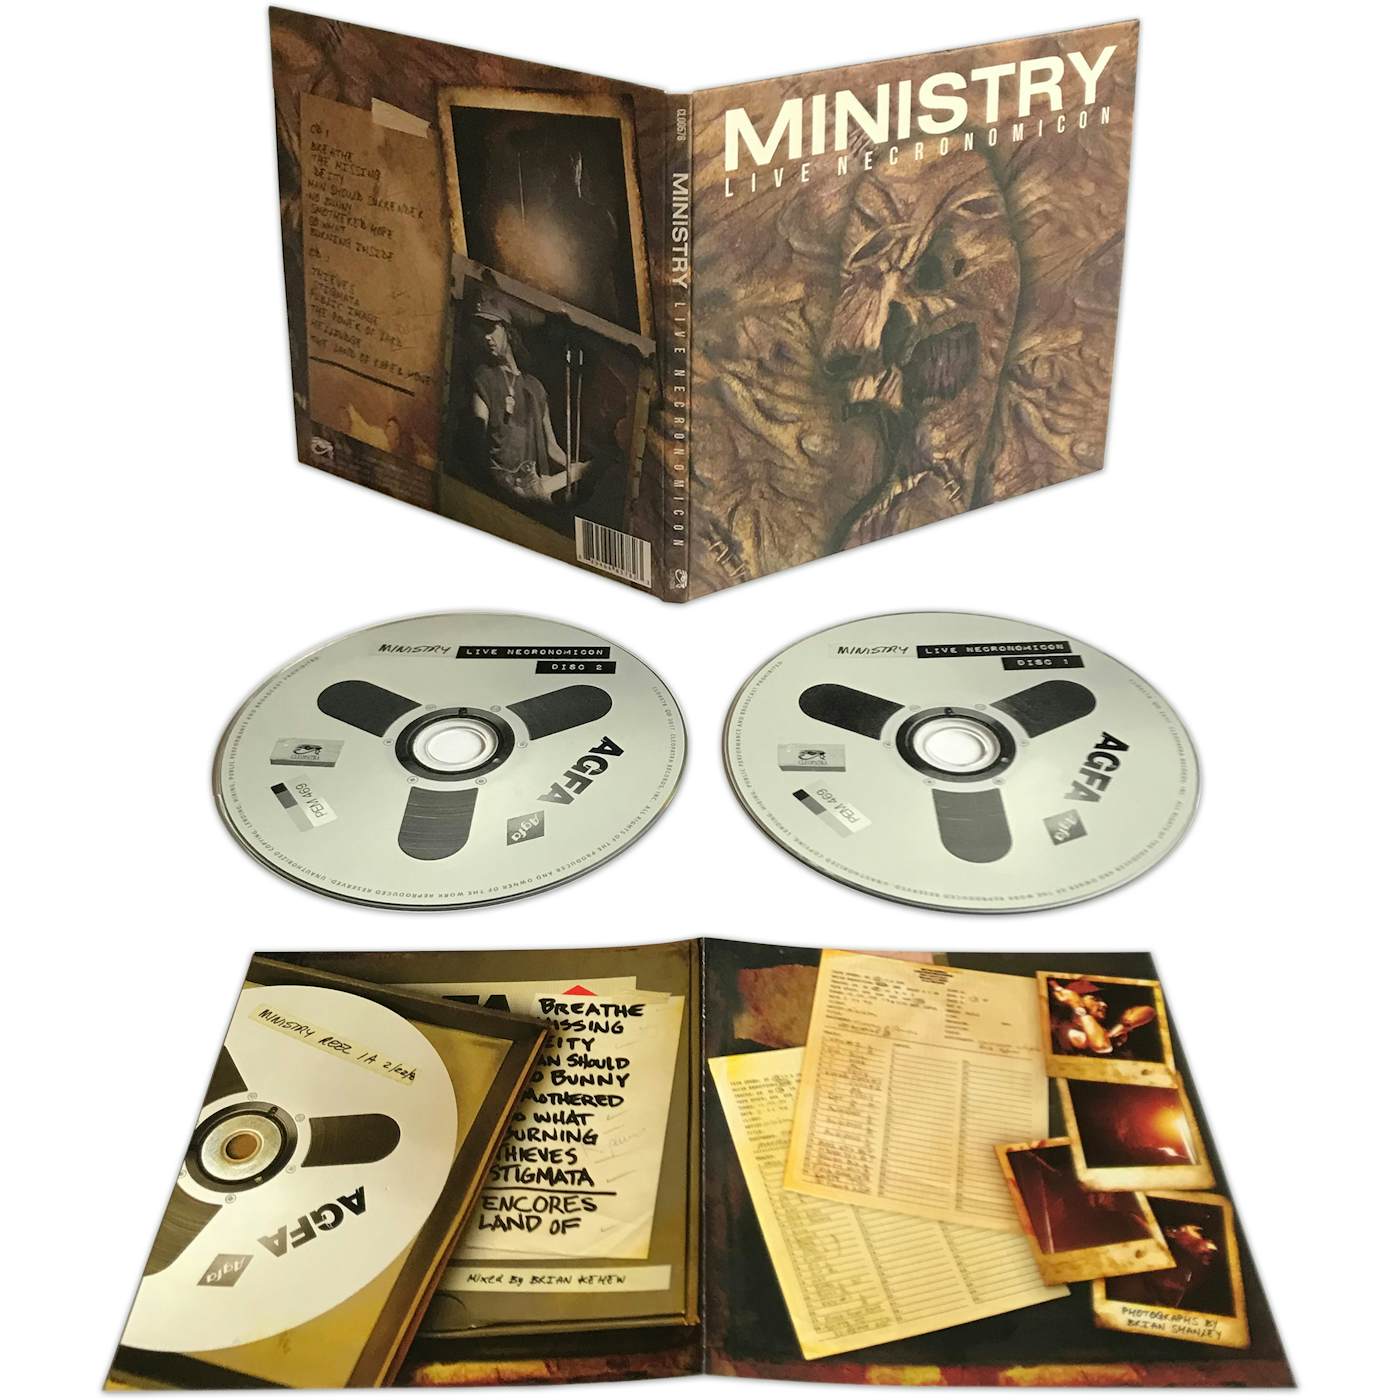 Ministry LIVE NECRONOMICON CD